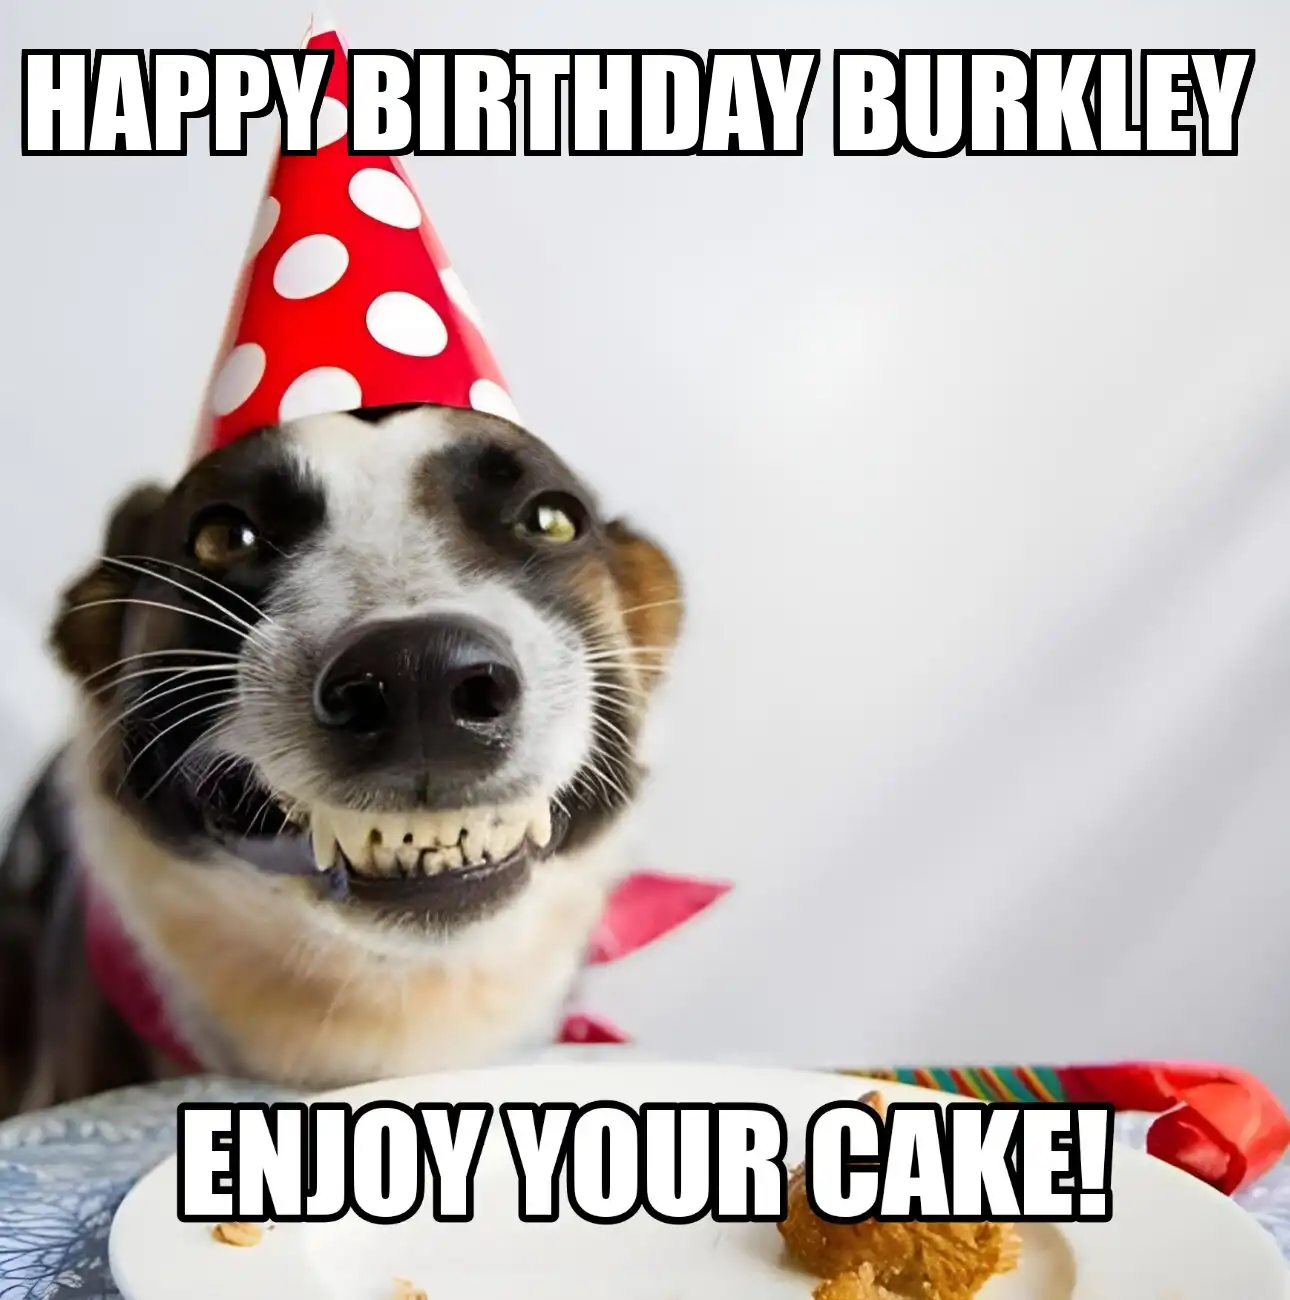 Happy Birthday Burkley Enjoy Your Cake Dog Meme